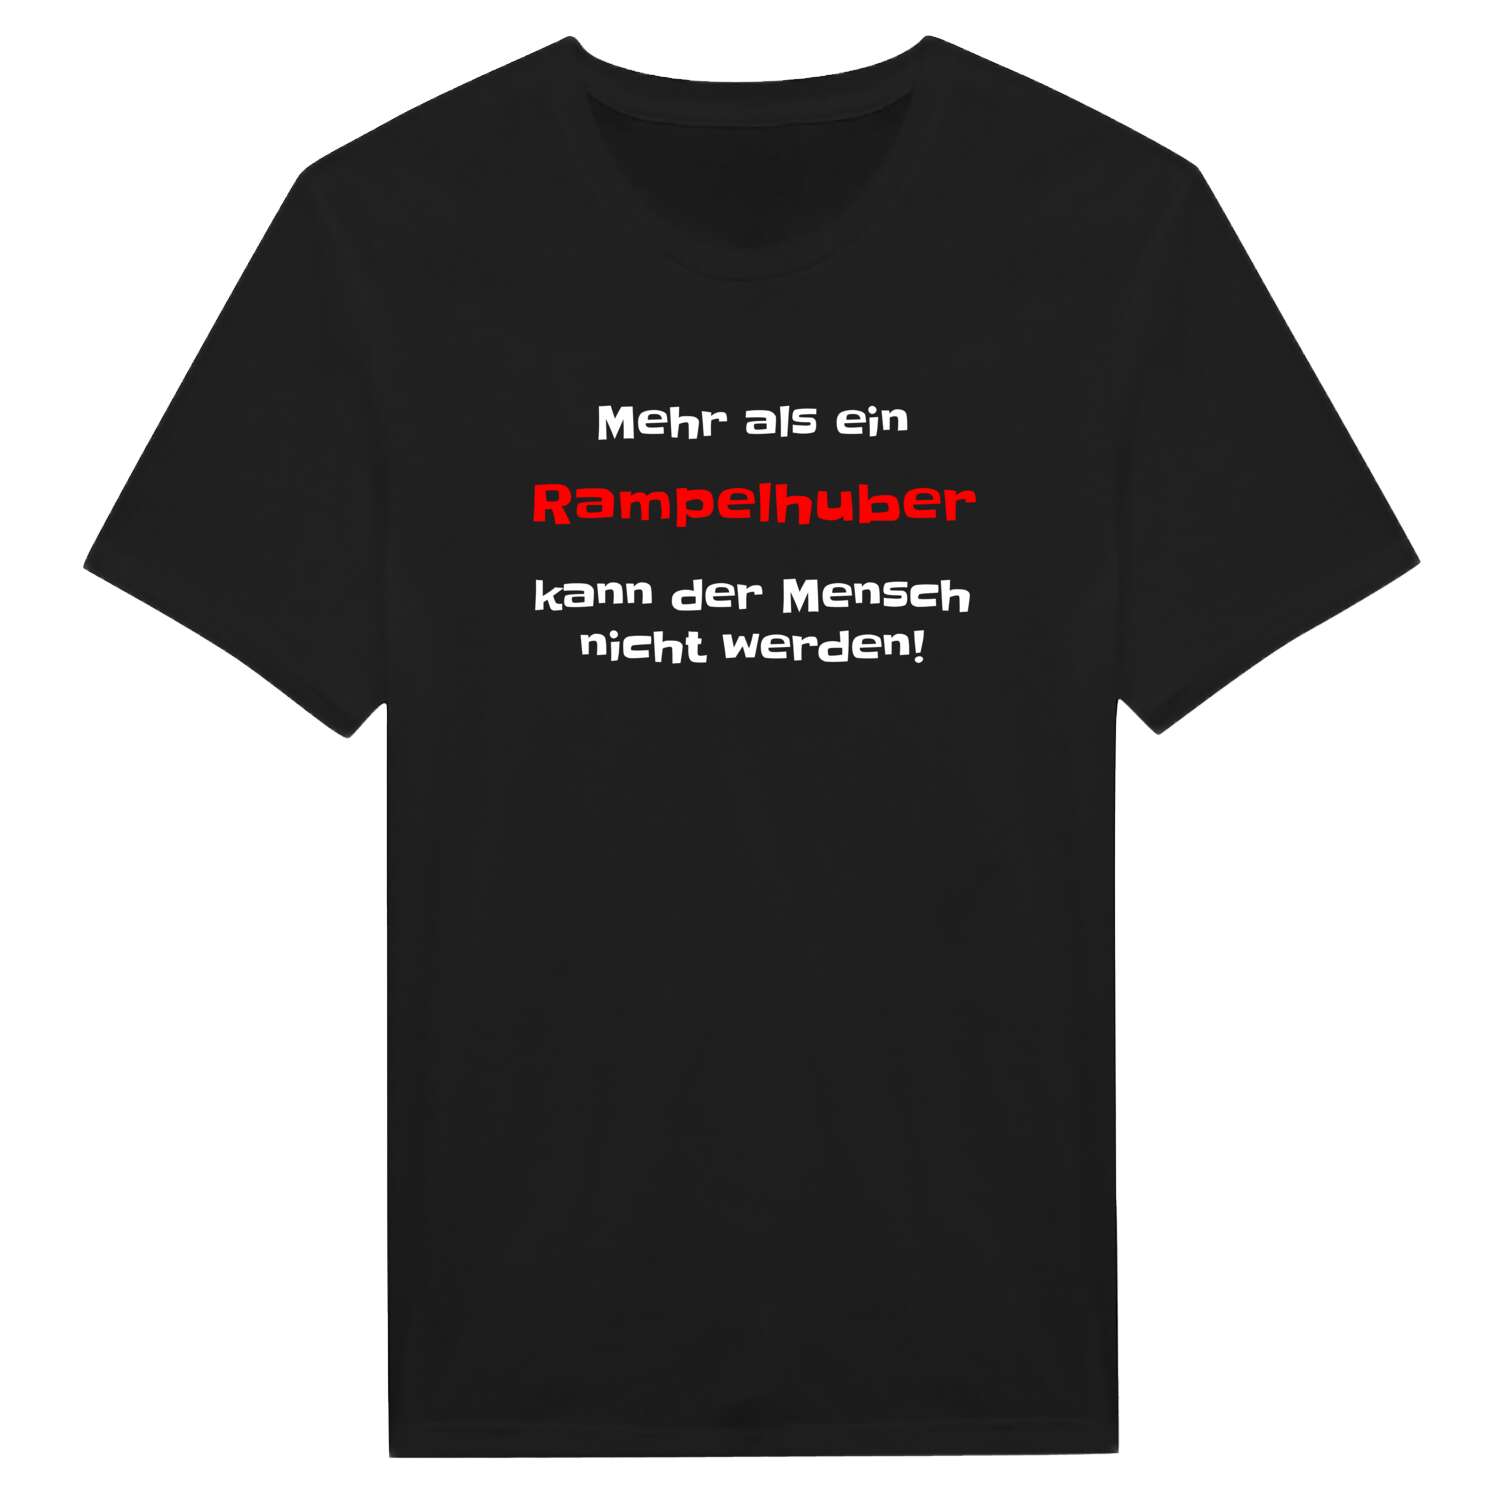 Rampelhub T-Shirt »Mehr als ein«